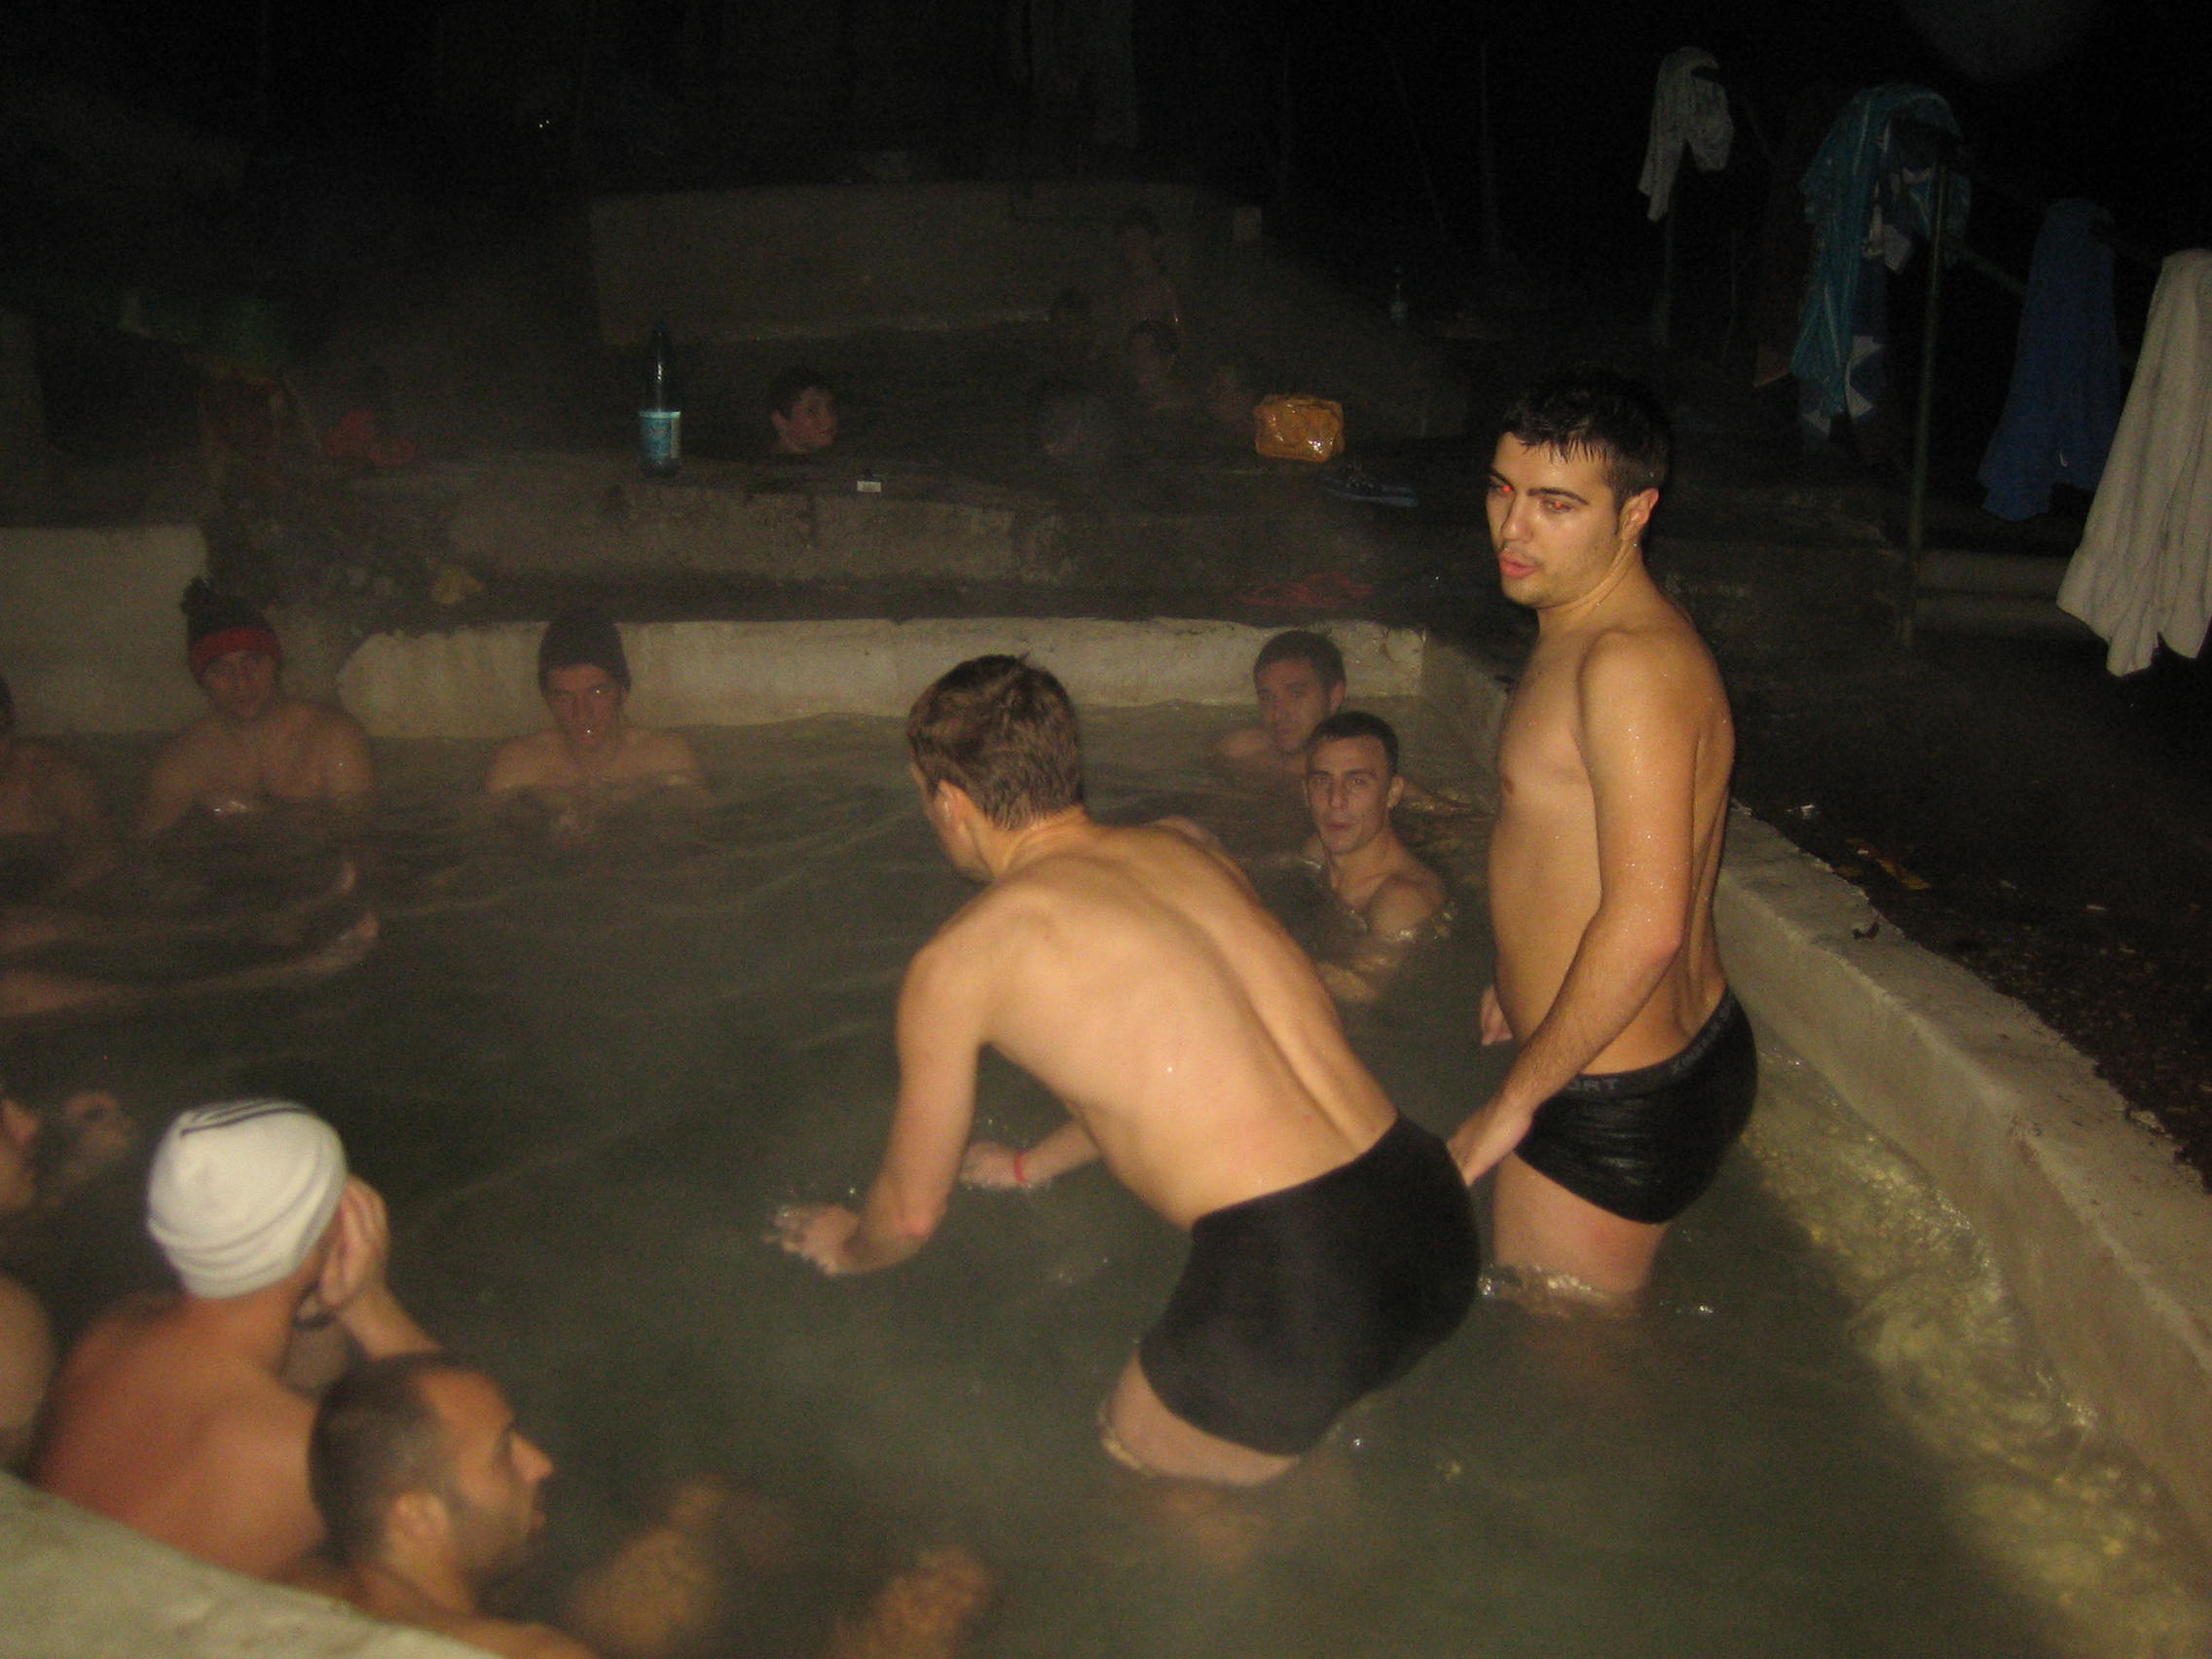 EXCLUSIV VIDEO Revelion la baie în aer liber şi în puterea nopţii la Băile Herculane